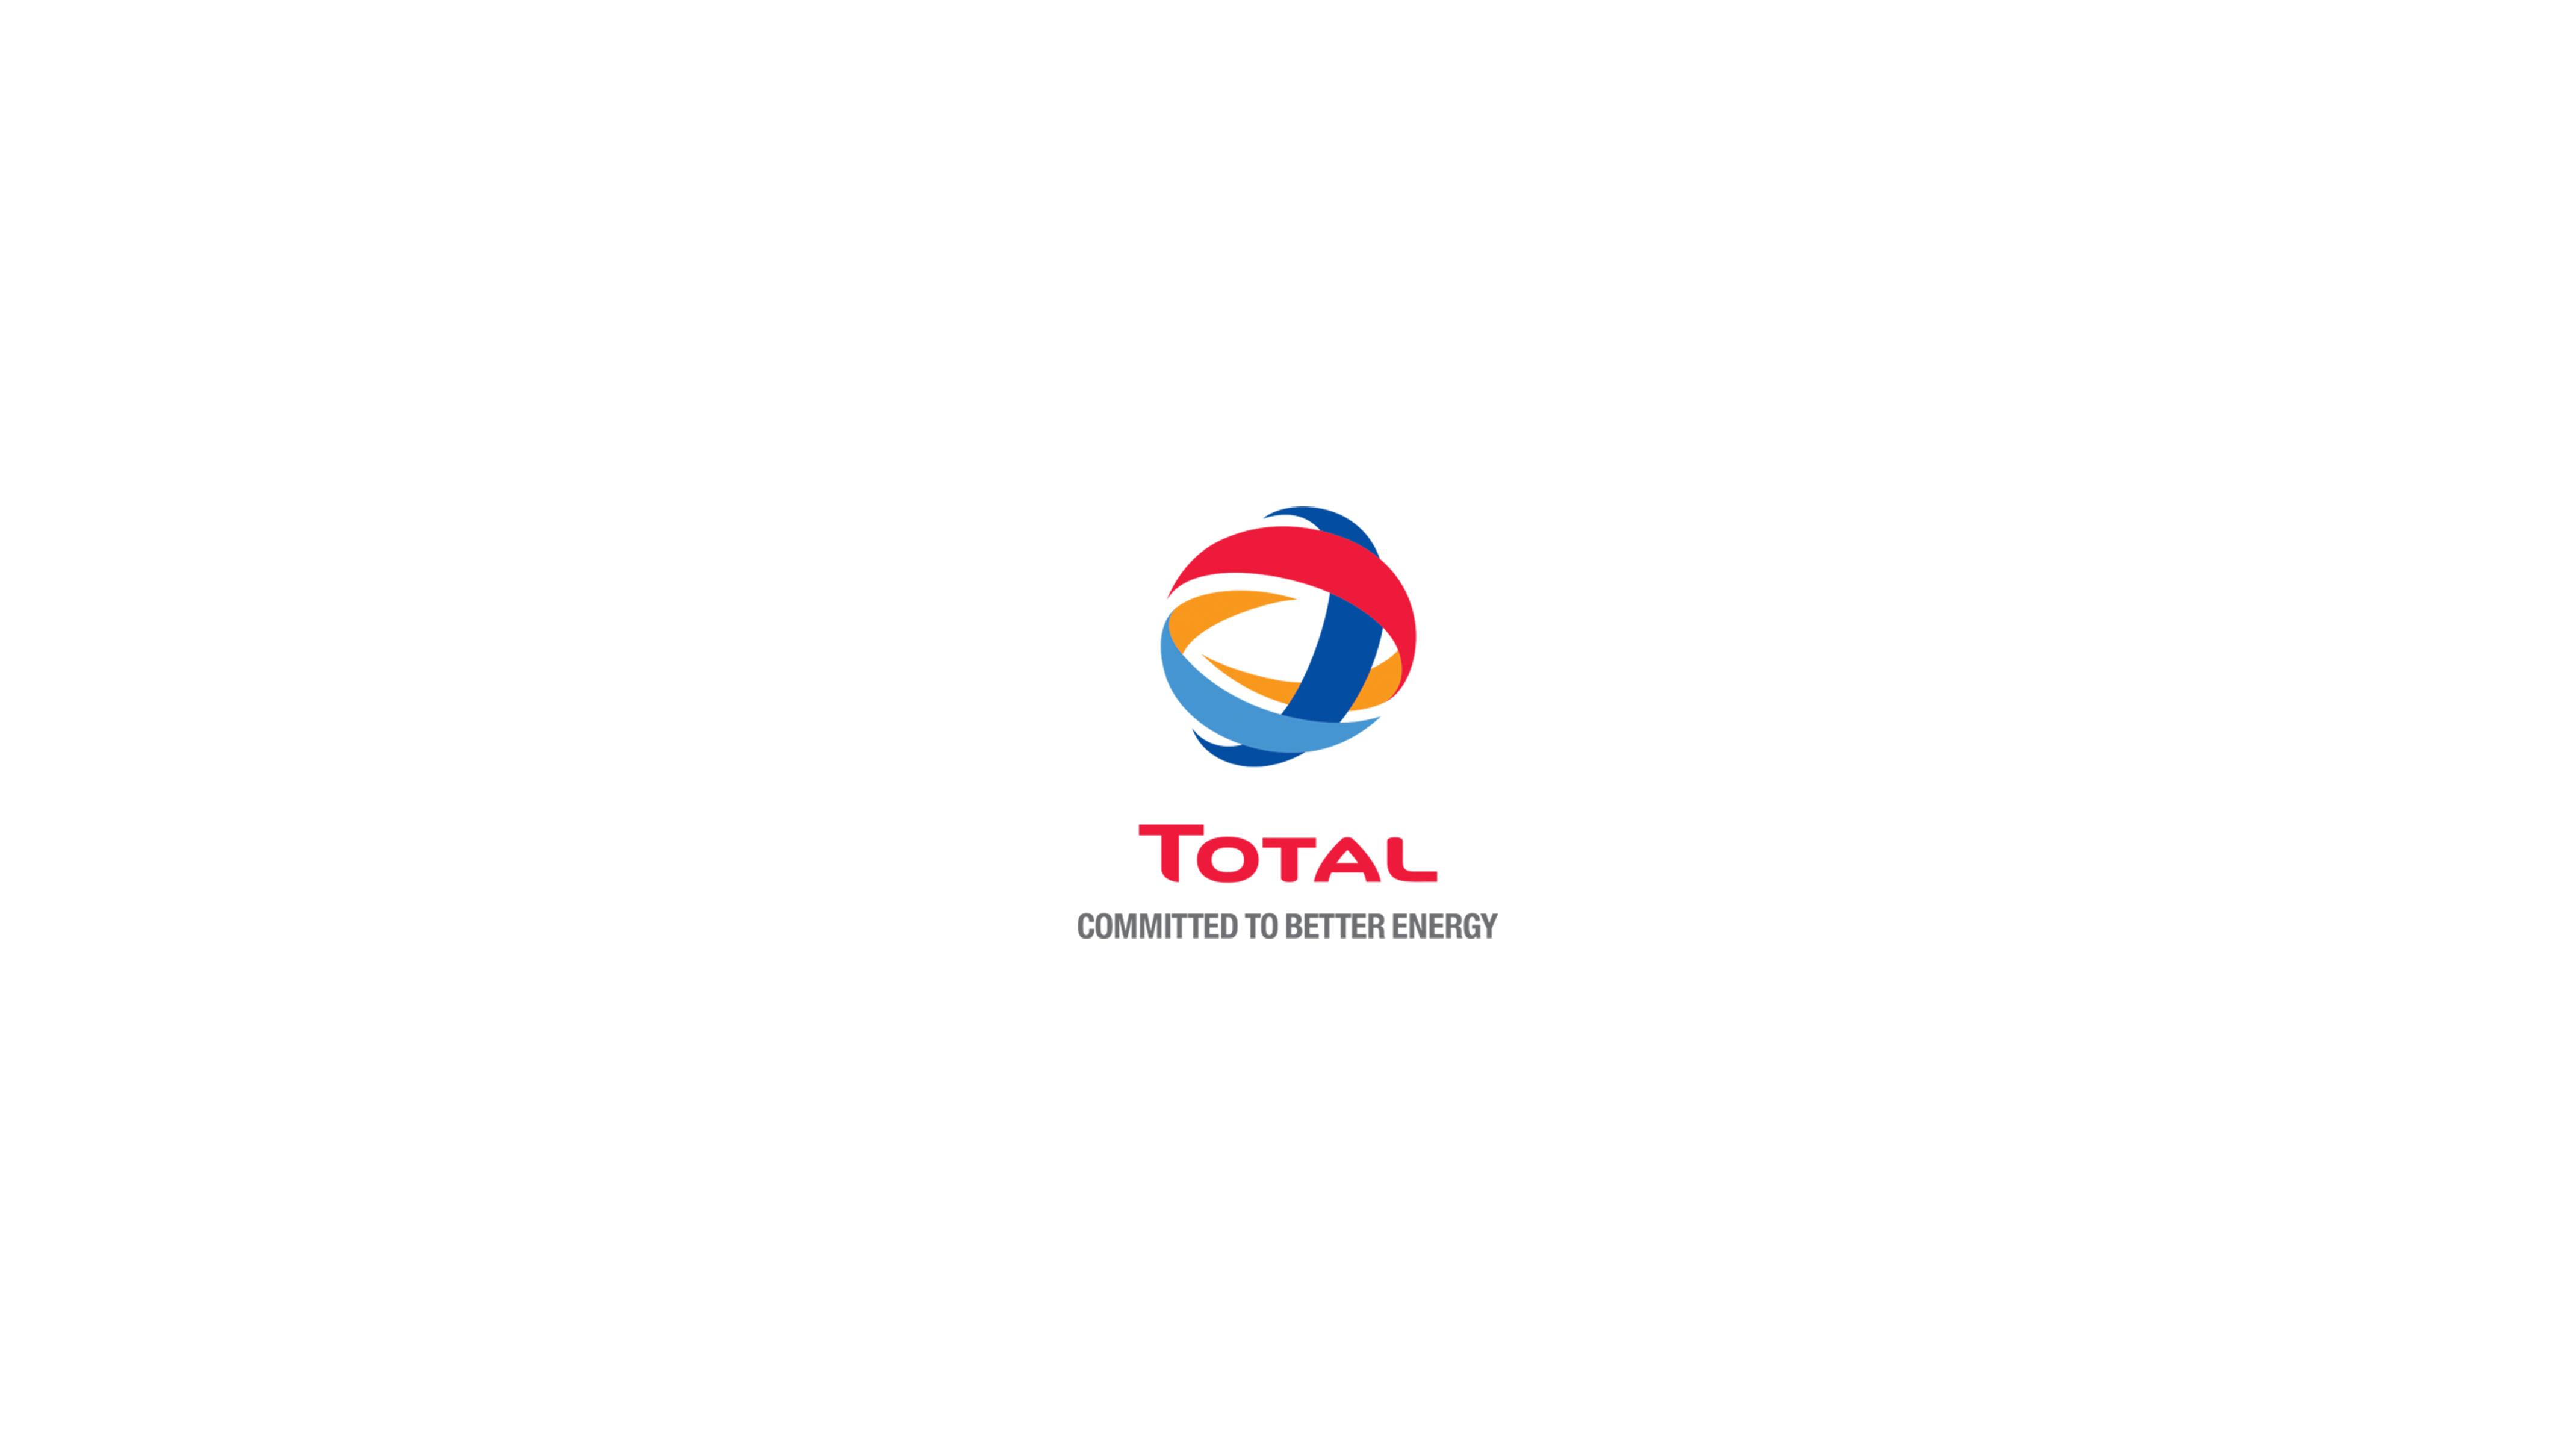 TOTAL Ghana's logo